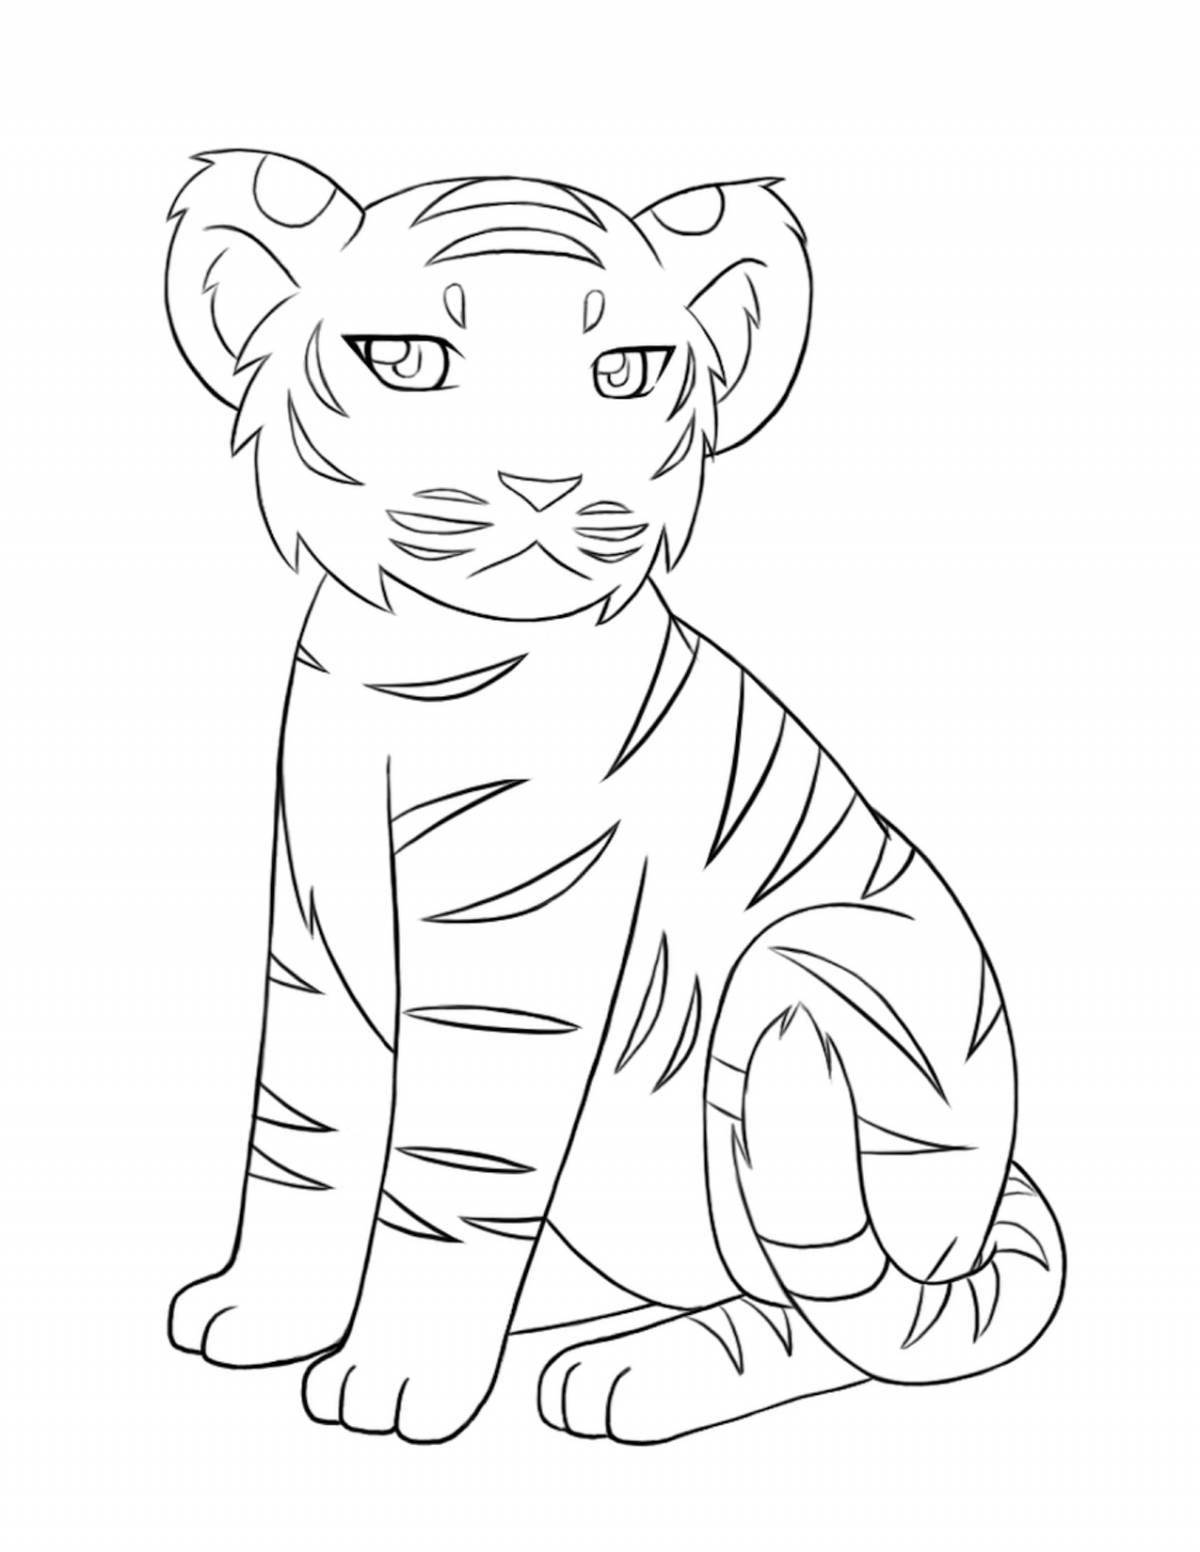 Complex drawing of a tiger cub